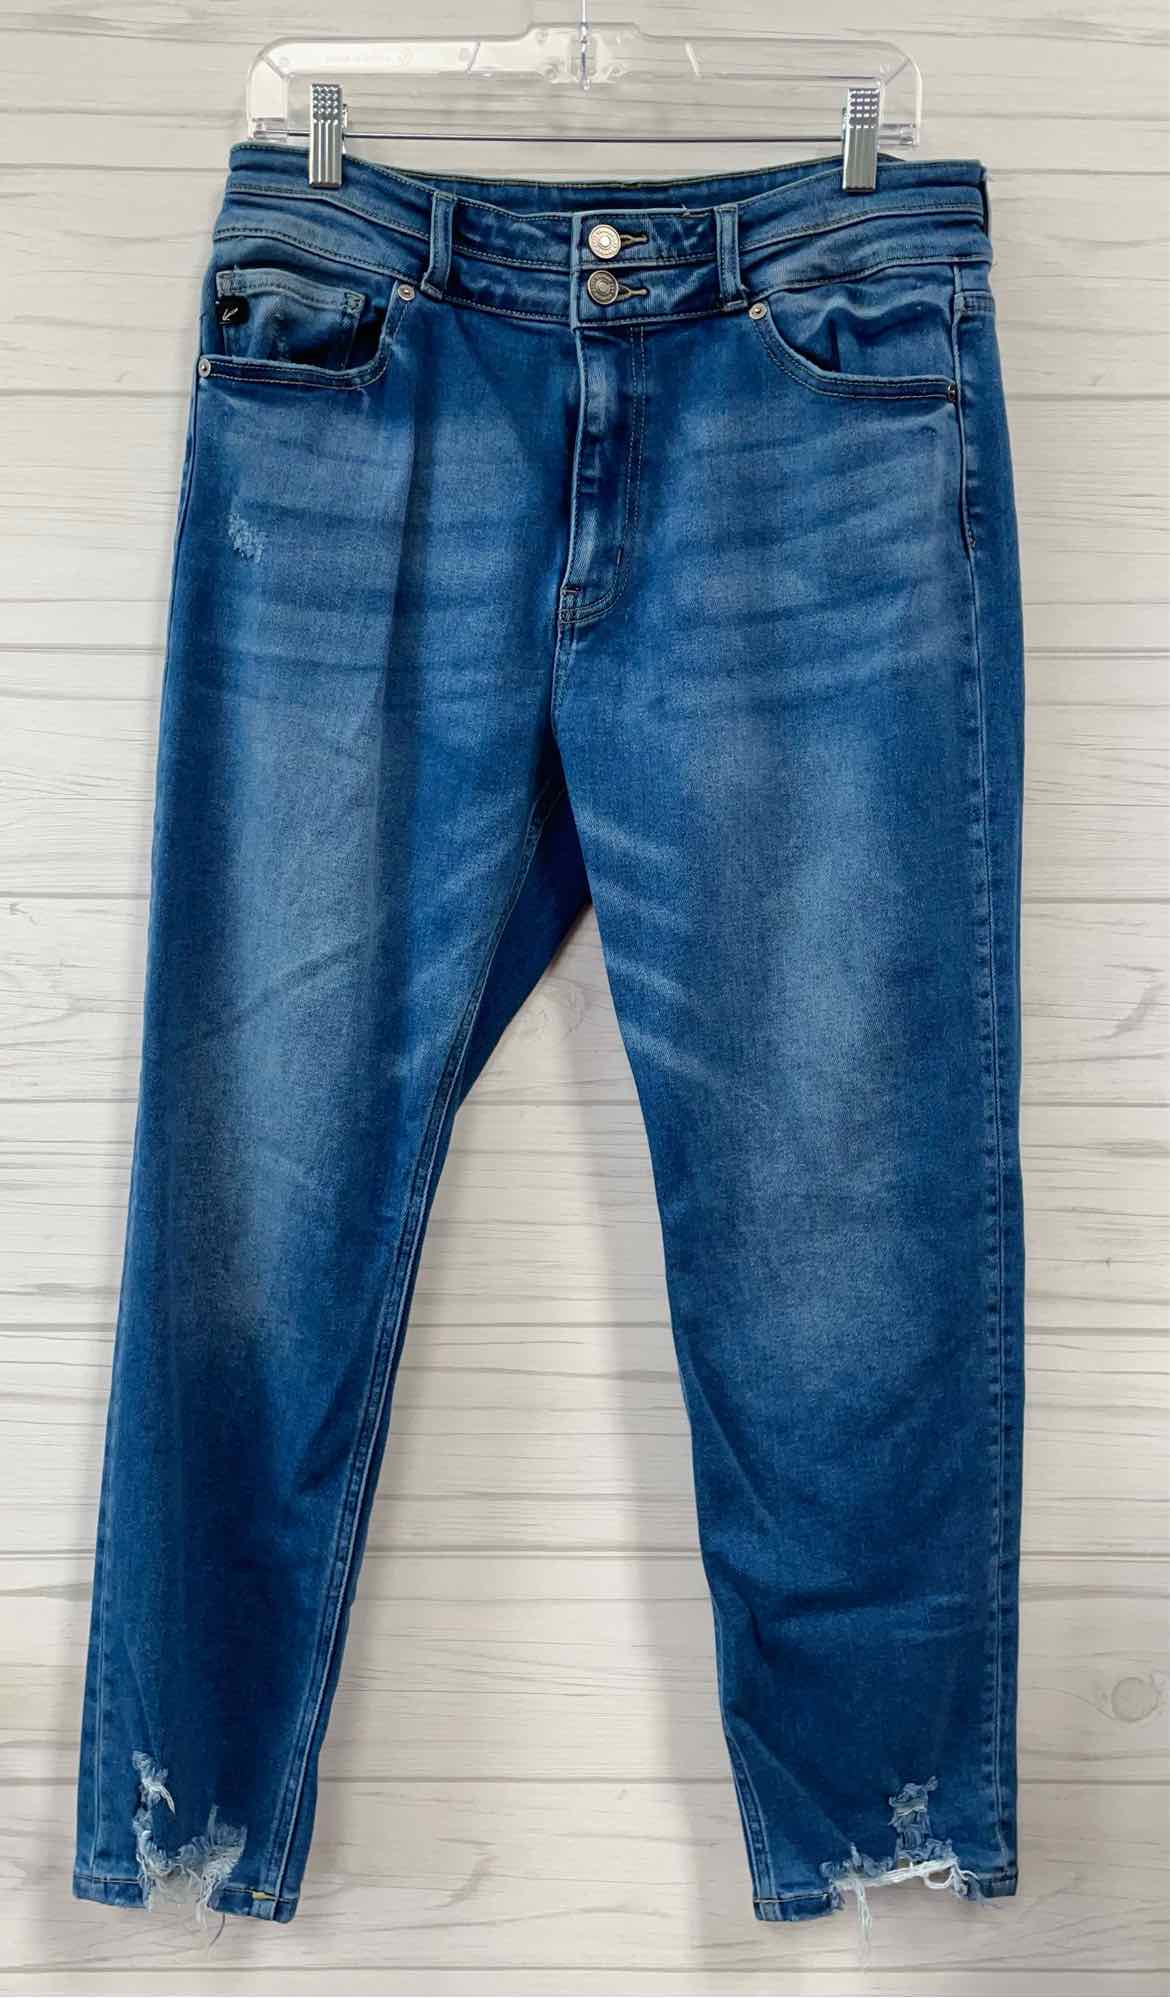 Size 15/31 Kancan Pants